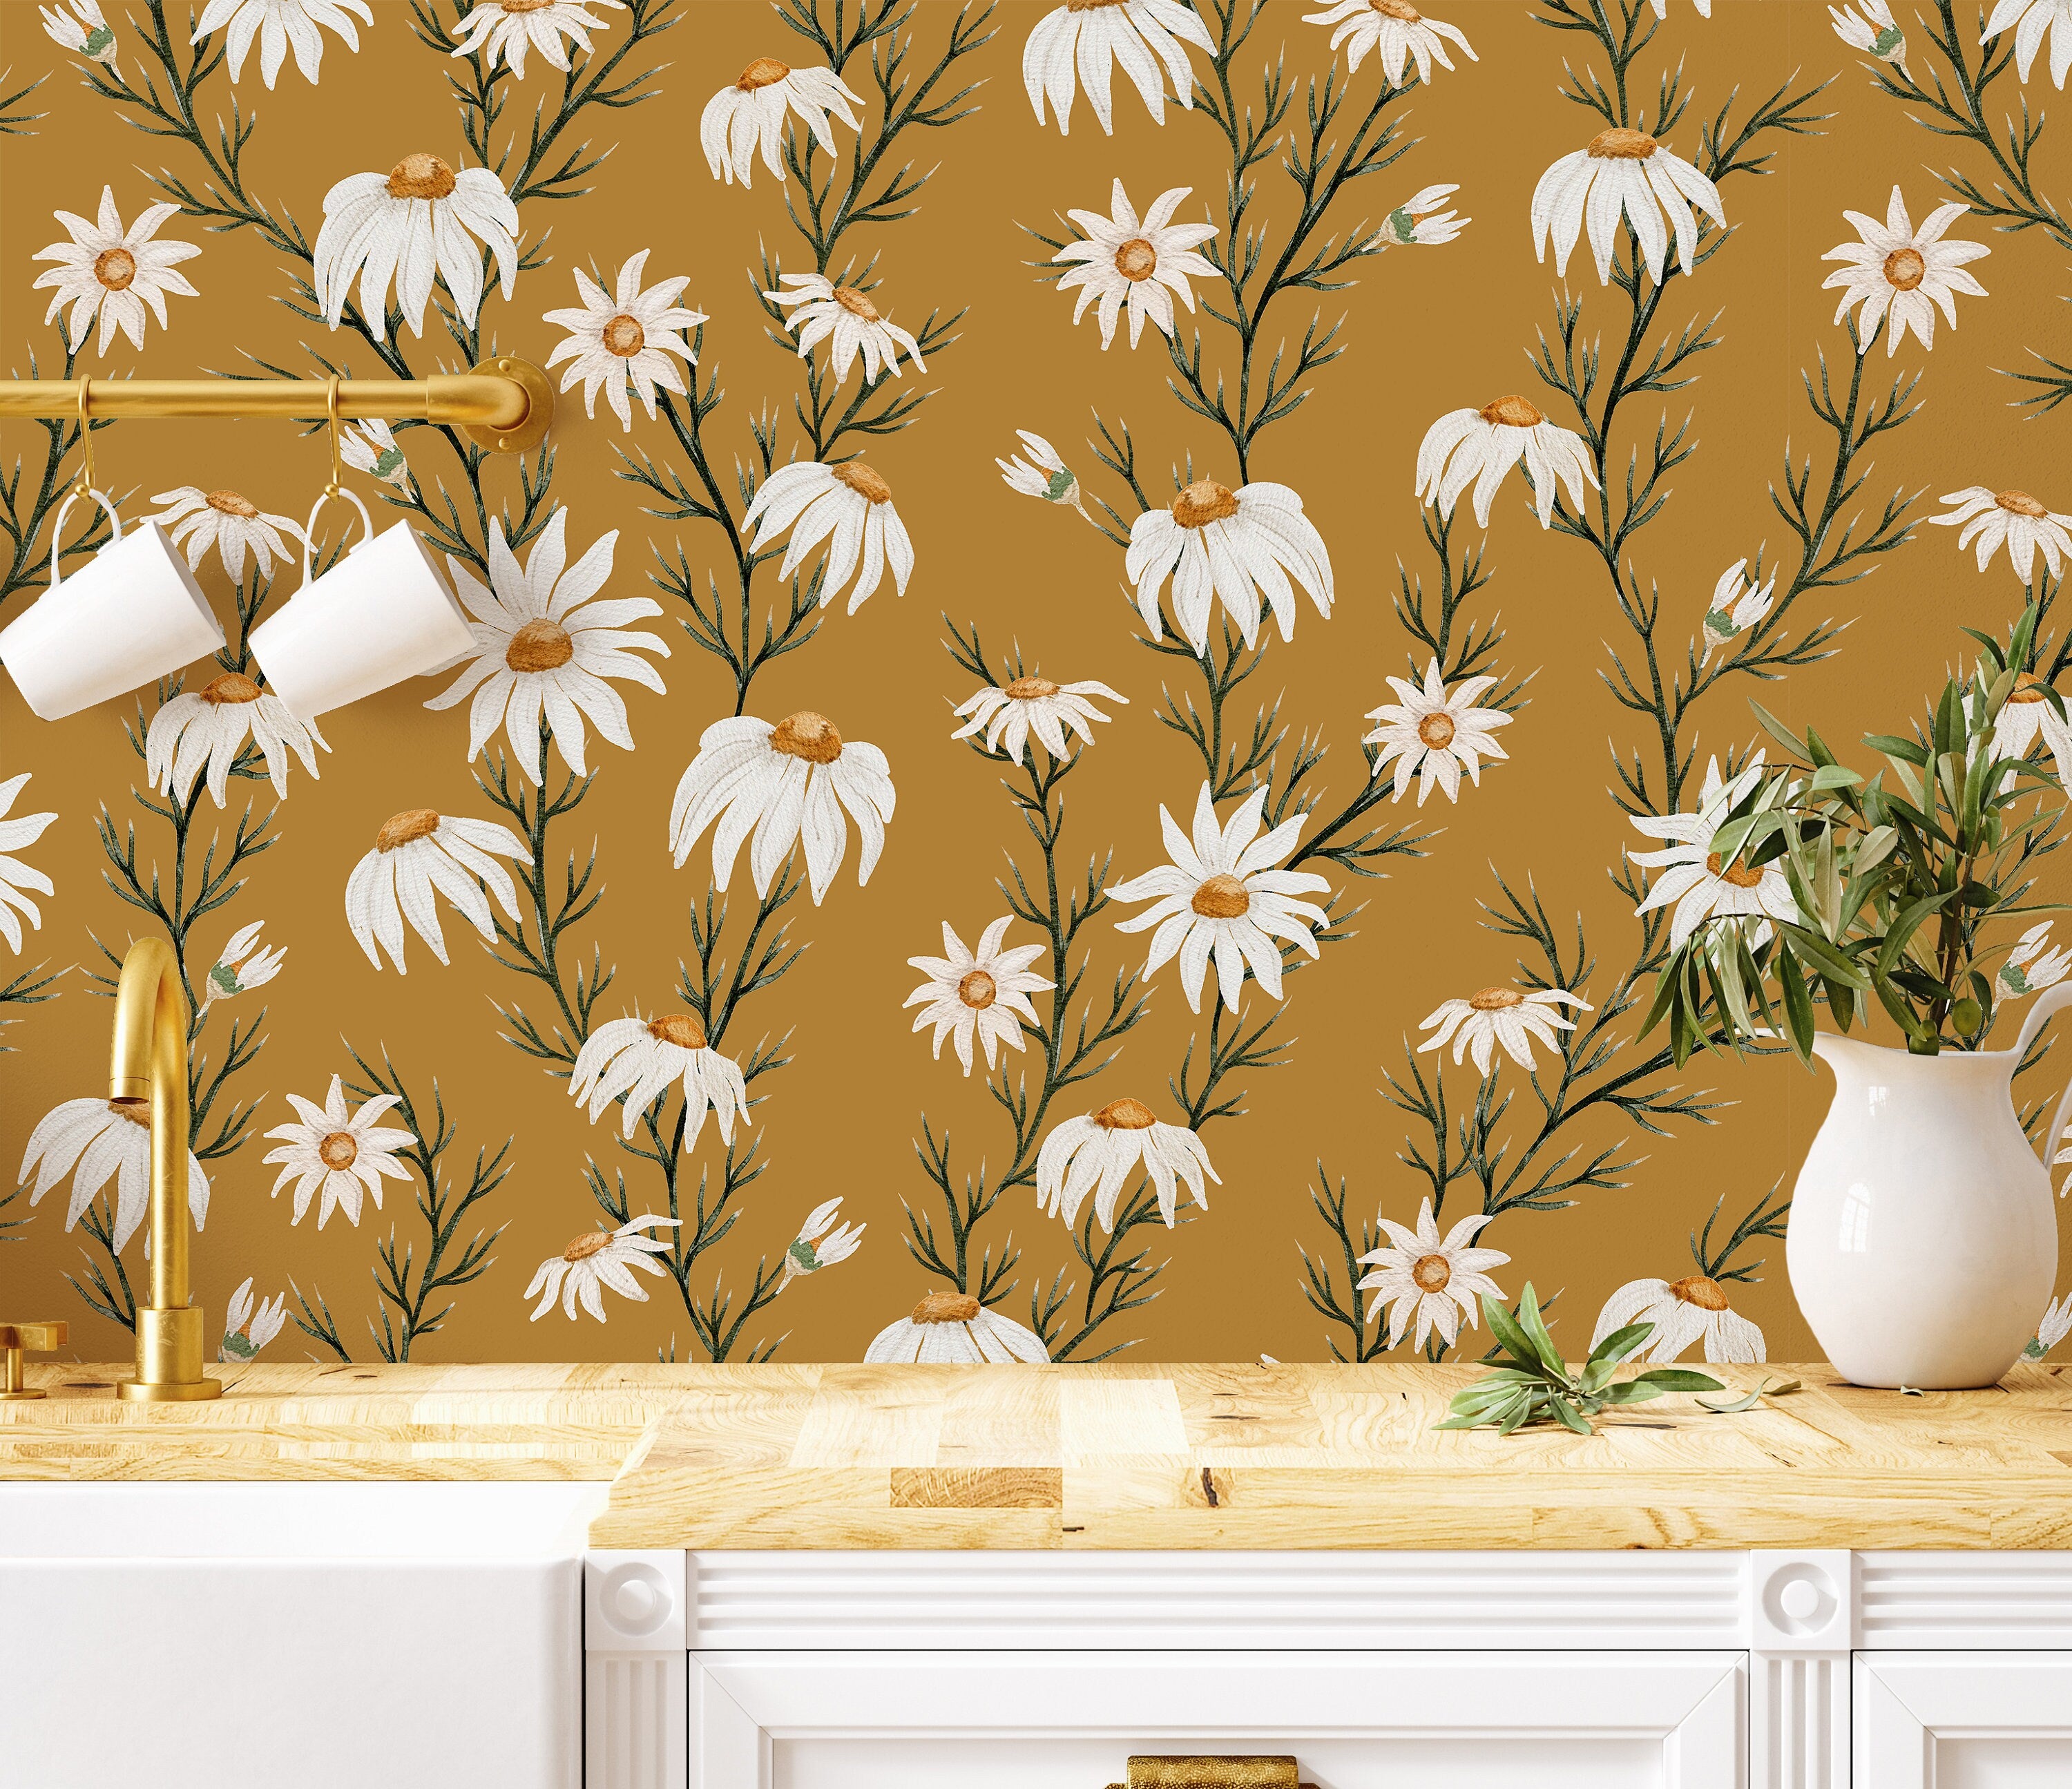 Golden Daisy Farmhouse Wallpaper | Wallpaper Peel and Stick | Removable Wallpaper | Wall Paper Peel And Stick | Wall Mural | Wall Decor 3442 - JamesAndColors